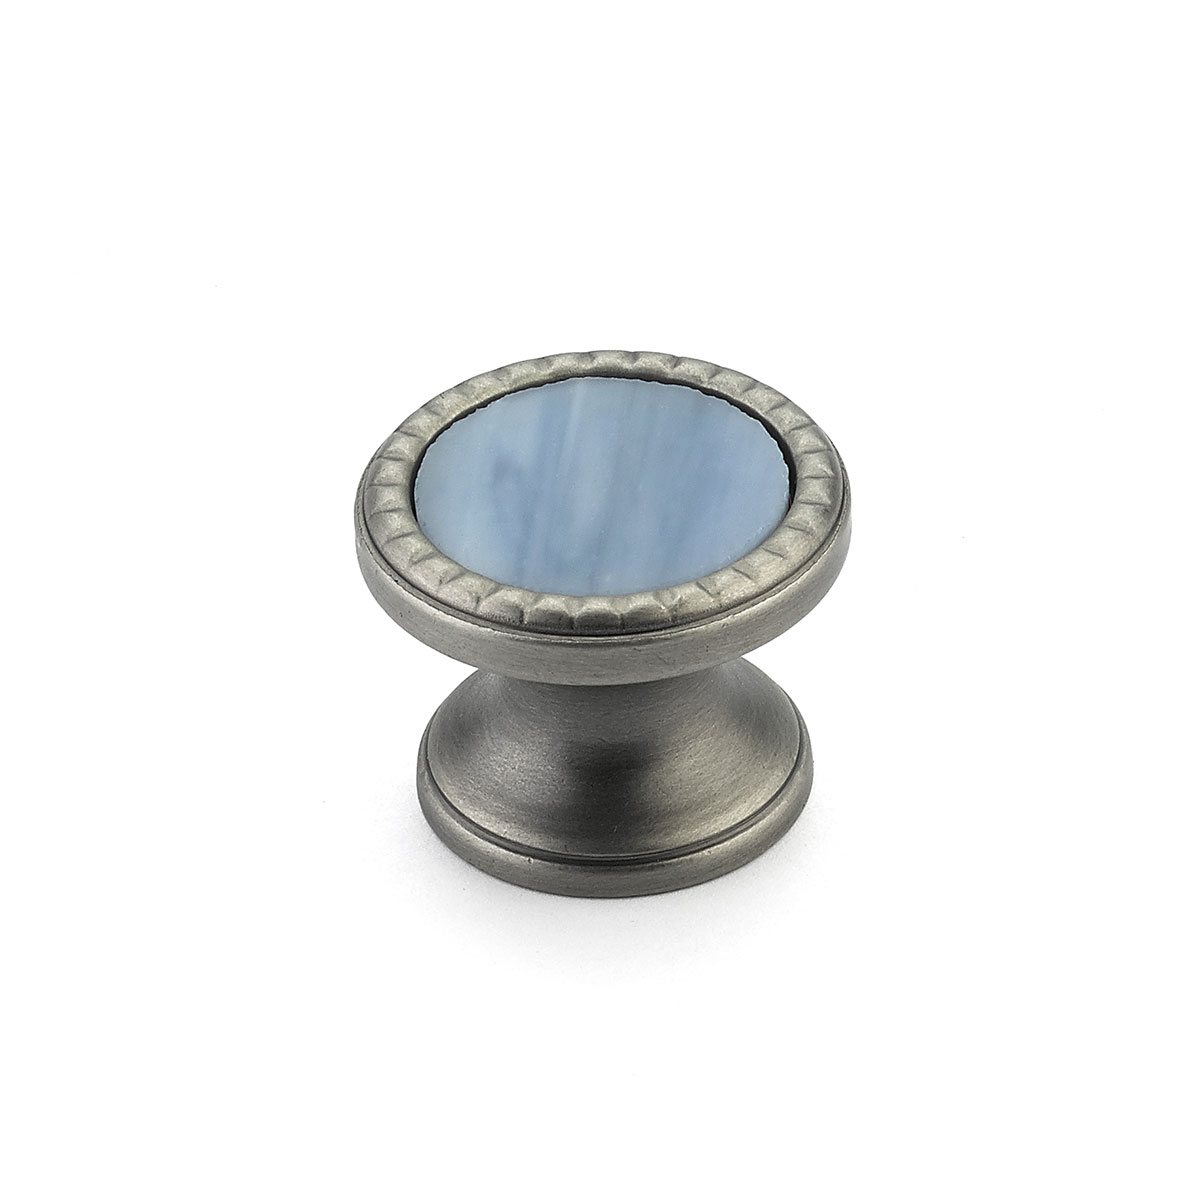 Schaub 20-AN-GB Round Knob, Antique Nickel, Glacier Blue Glass Inlay, 1-1/4" Dia - Antique Nickel